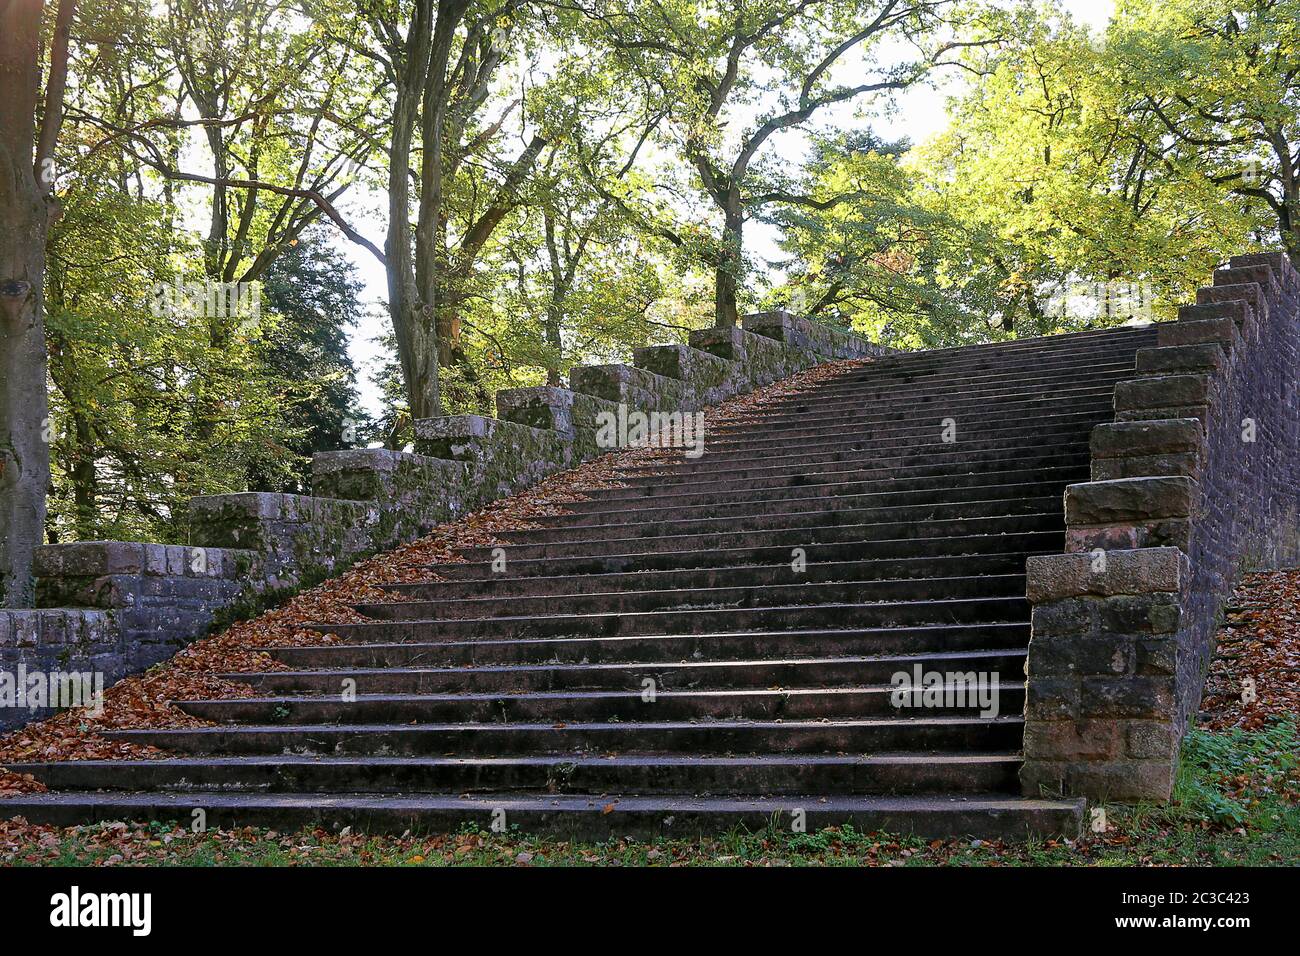 ThingstÃ¤tte Heidelberg - Treppe im herbstlichen Buchenwald Stockfoto